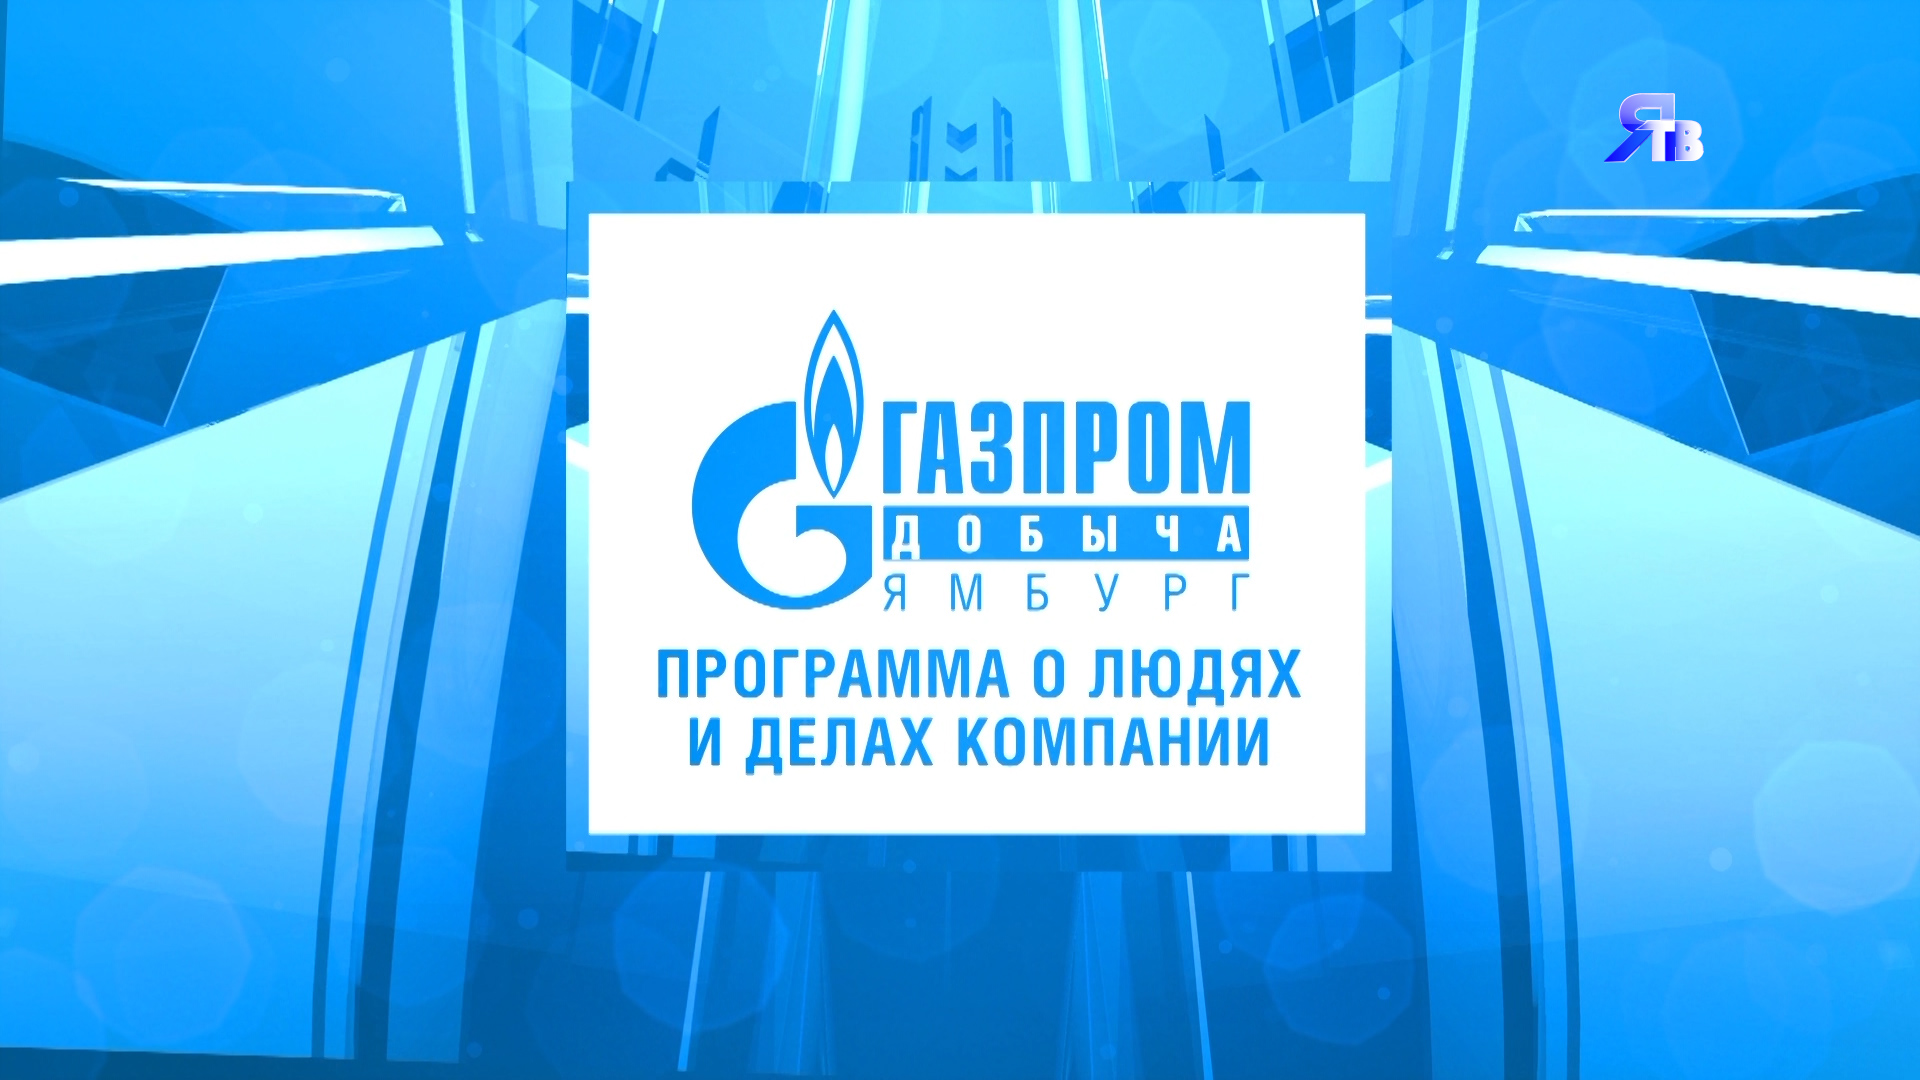 5 сентября / Программа о людях и делах компании ООО «Газпром добыча Ямбург»